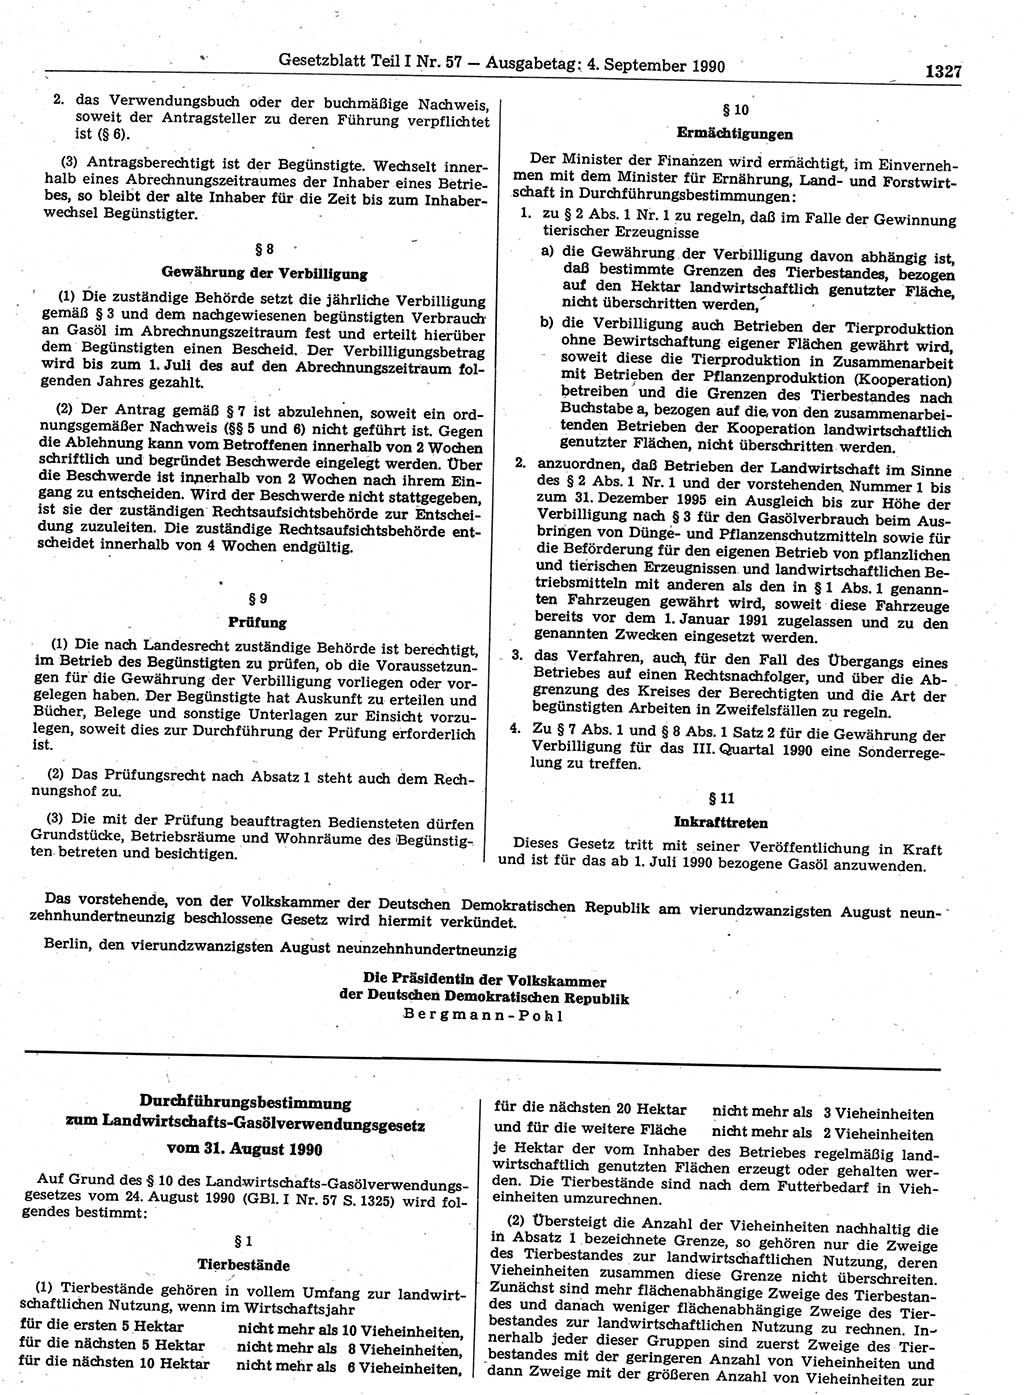 Gesetzblatt (GBl.) der Deutschen Demokratischen Republik (DDR) Teil Ⅰ 1990, Seite 1327 (GBl. DDR Ⅰ 1990, S. 1327)